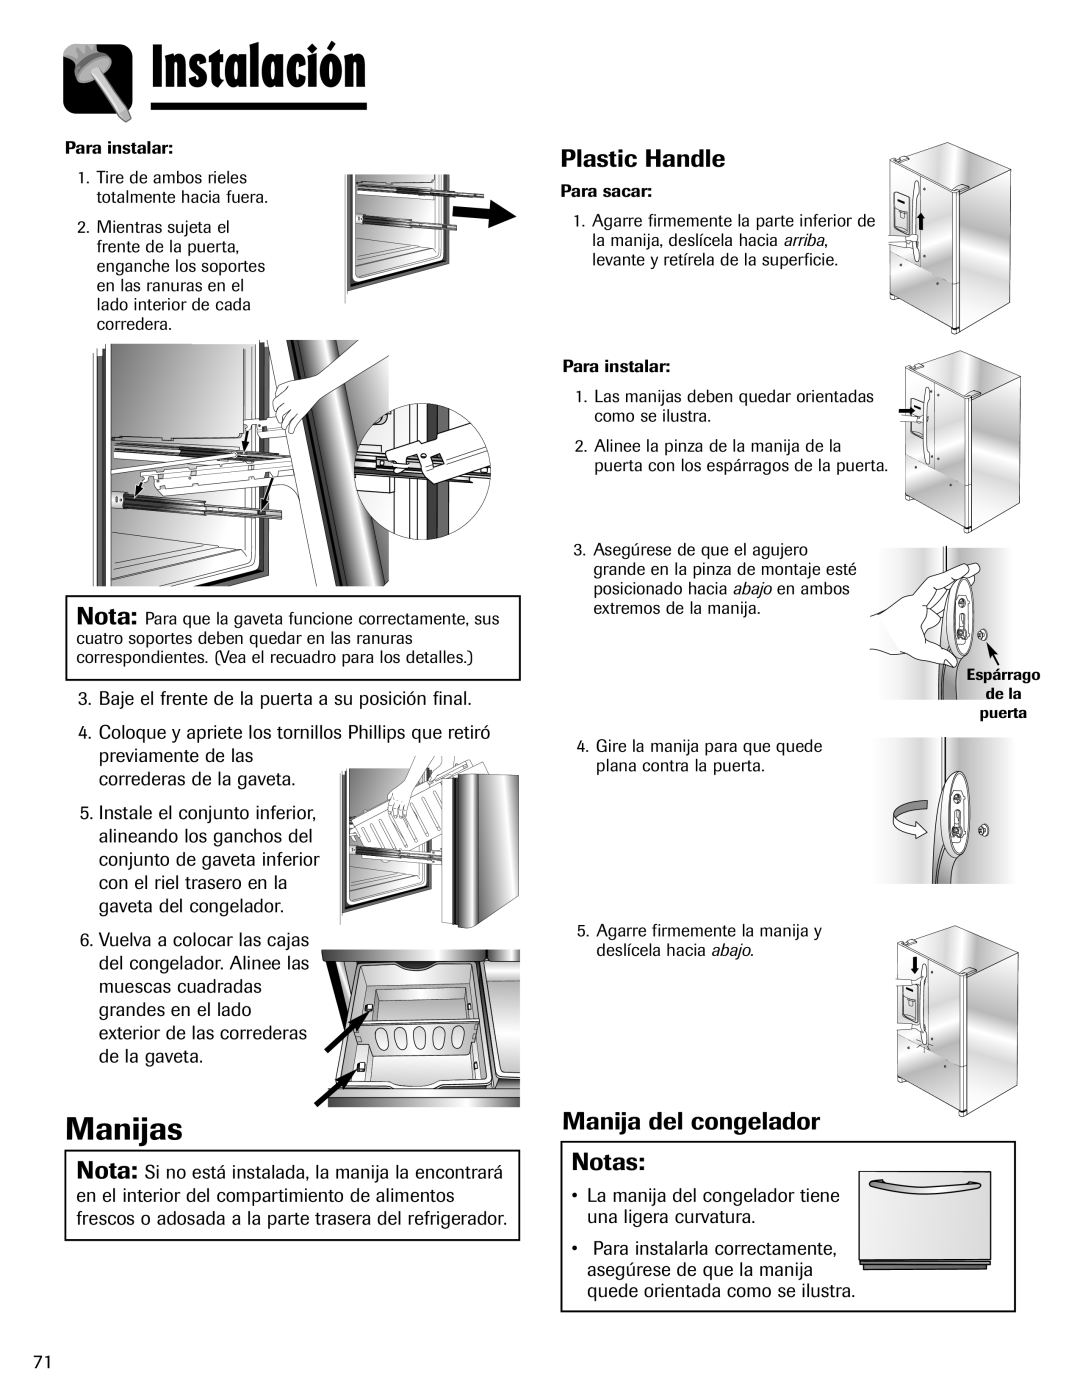 Maytag MFI2266AEW important safety instructions Manijas, Manija del congelador Notas, Instalación, Plastic Handle 